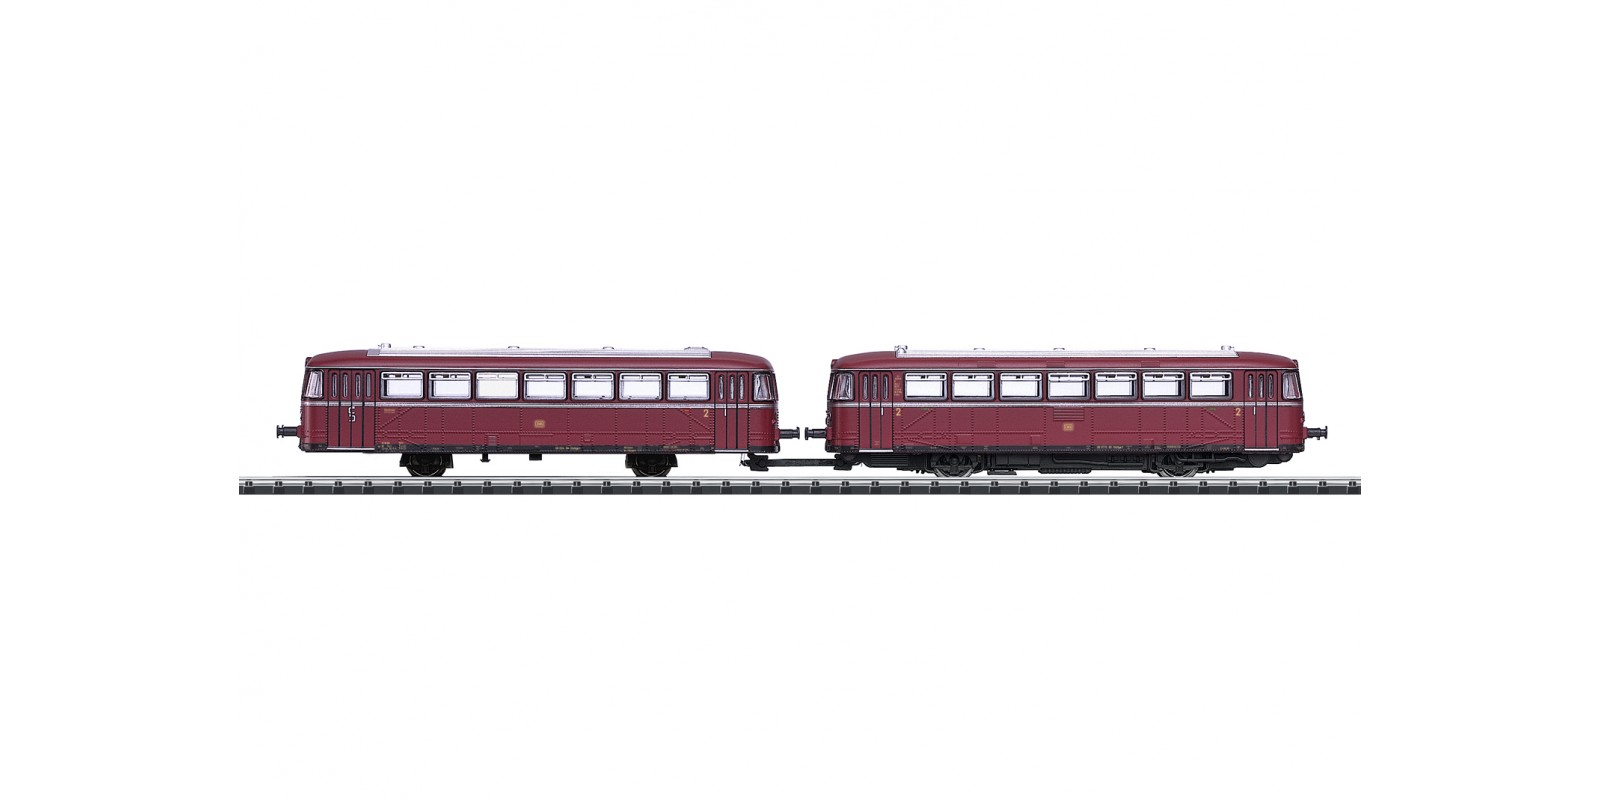 T16981 Classes VT 98 and VS 98